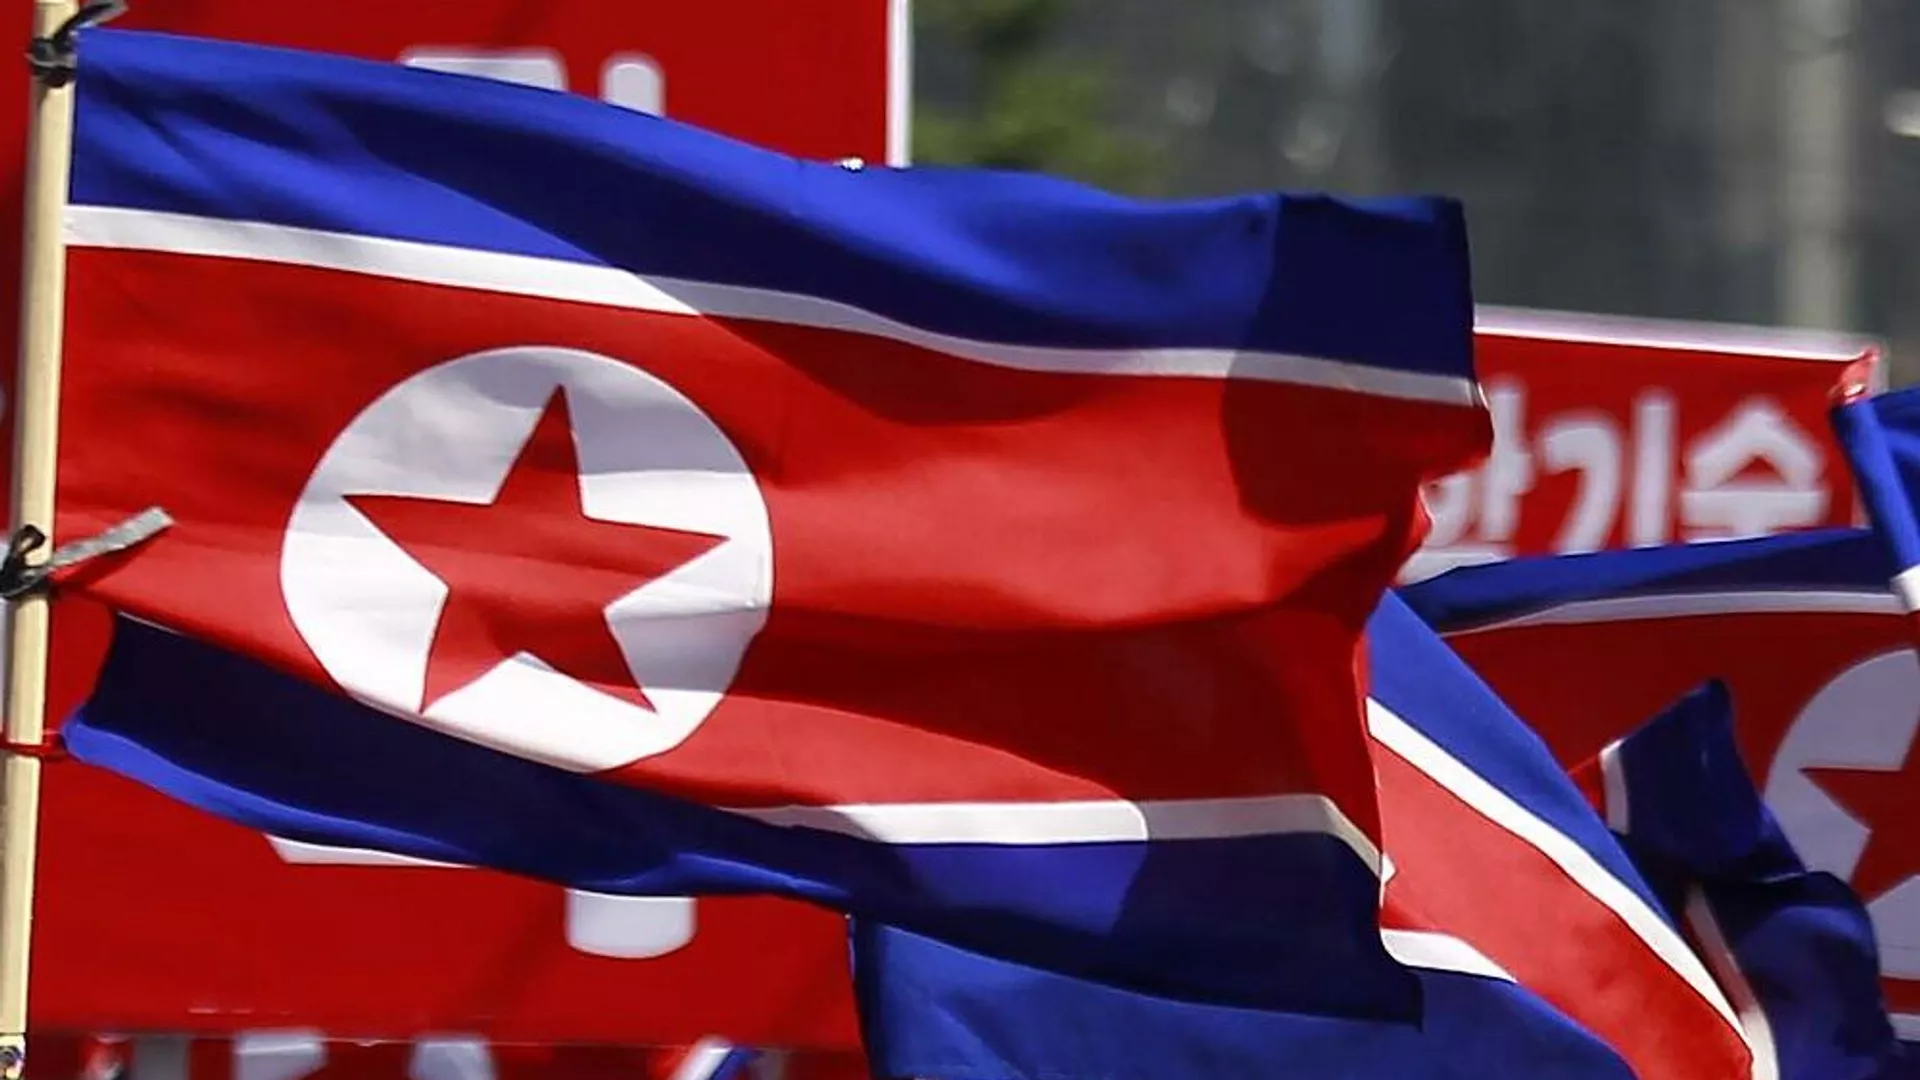 كوريا الشمالية تعتبر اليابان “الدولة الأكثر تهديدا في المنطقة” بسبب خططها لشراء صواريخ أمريكية